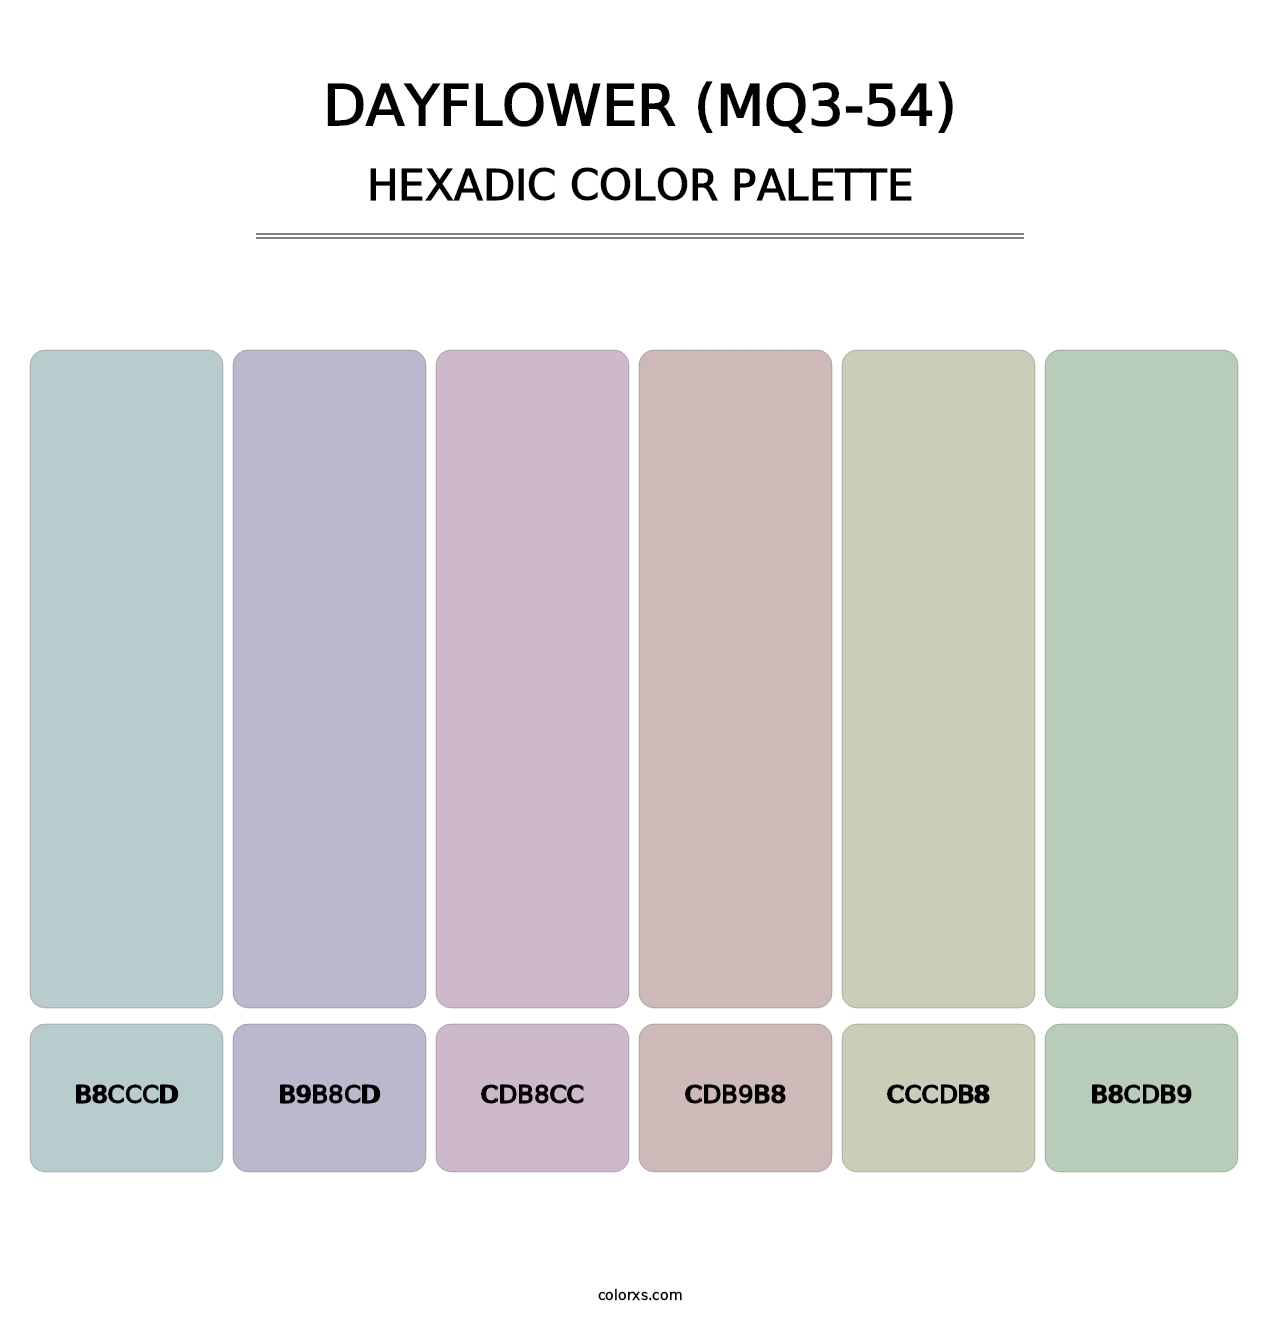 Dayflower (MQ3-54) - Hexadic Color Palette